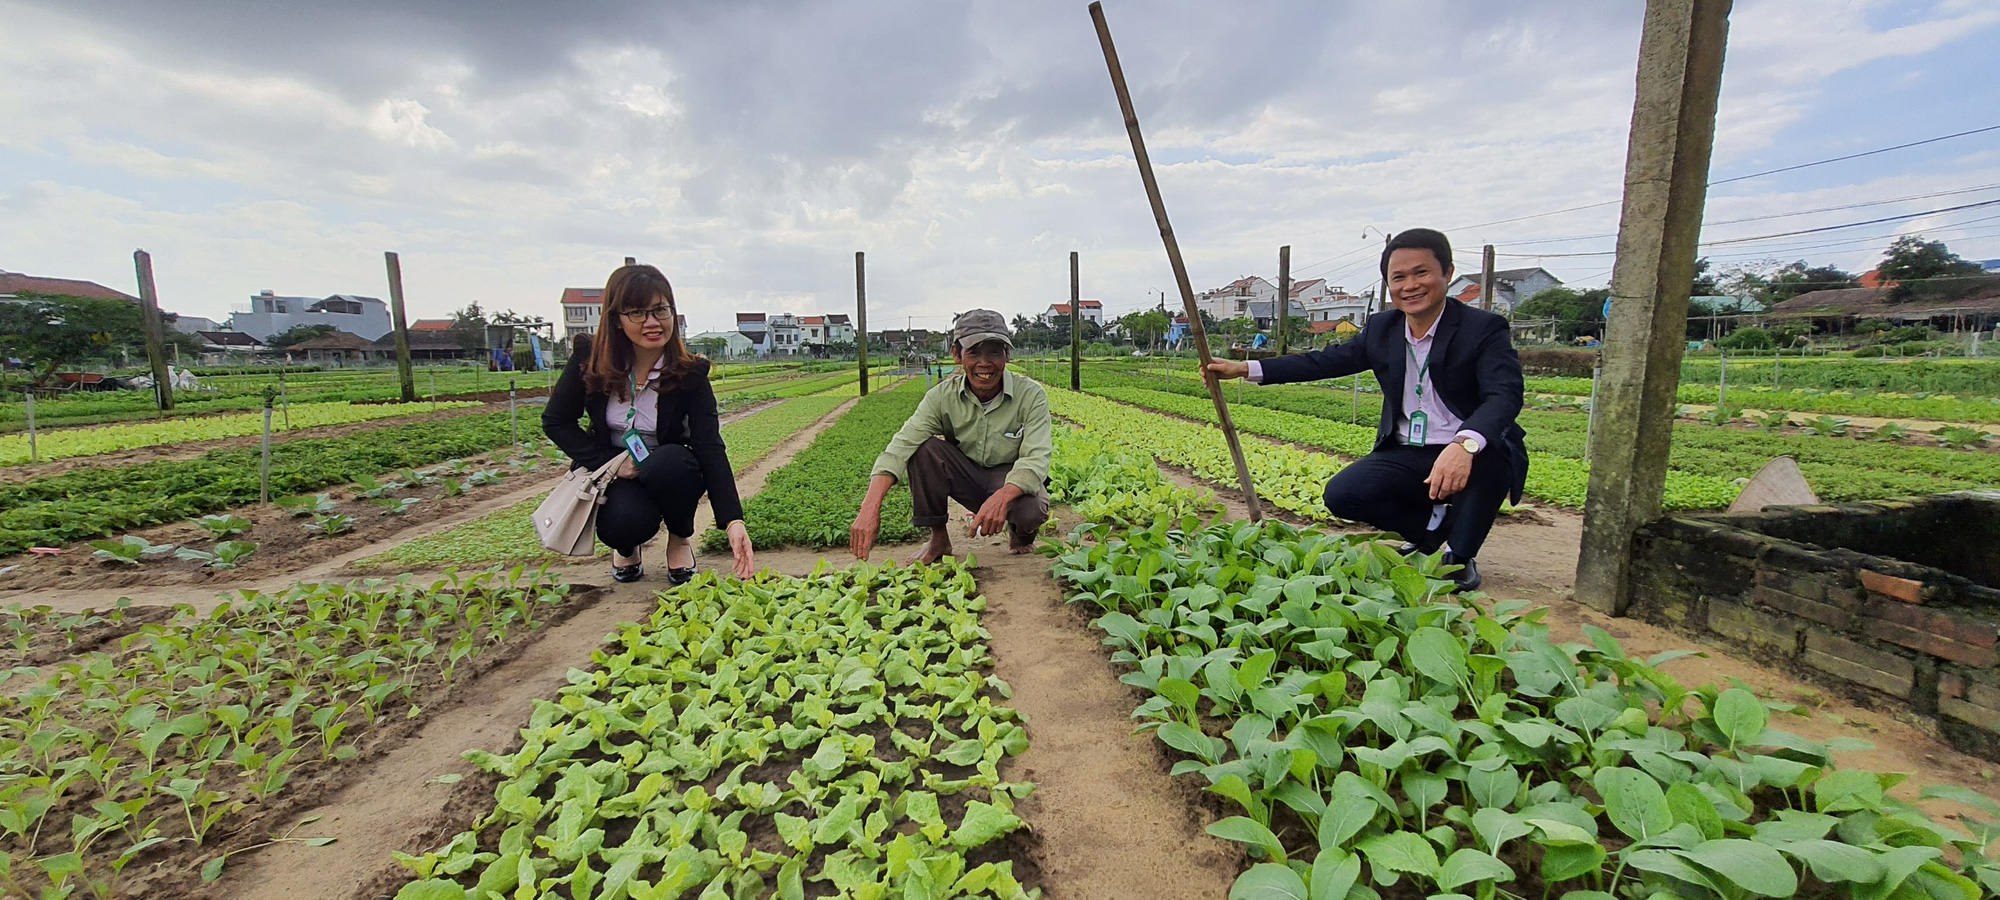 Quảng Nam: Nông dân trồng rau ở Hội An khá giả nhờ được nguồn vốn ưu đãi tiếp sức - Ảnh 1.